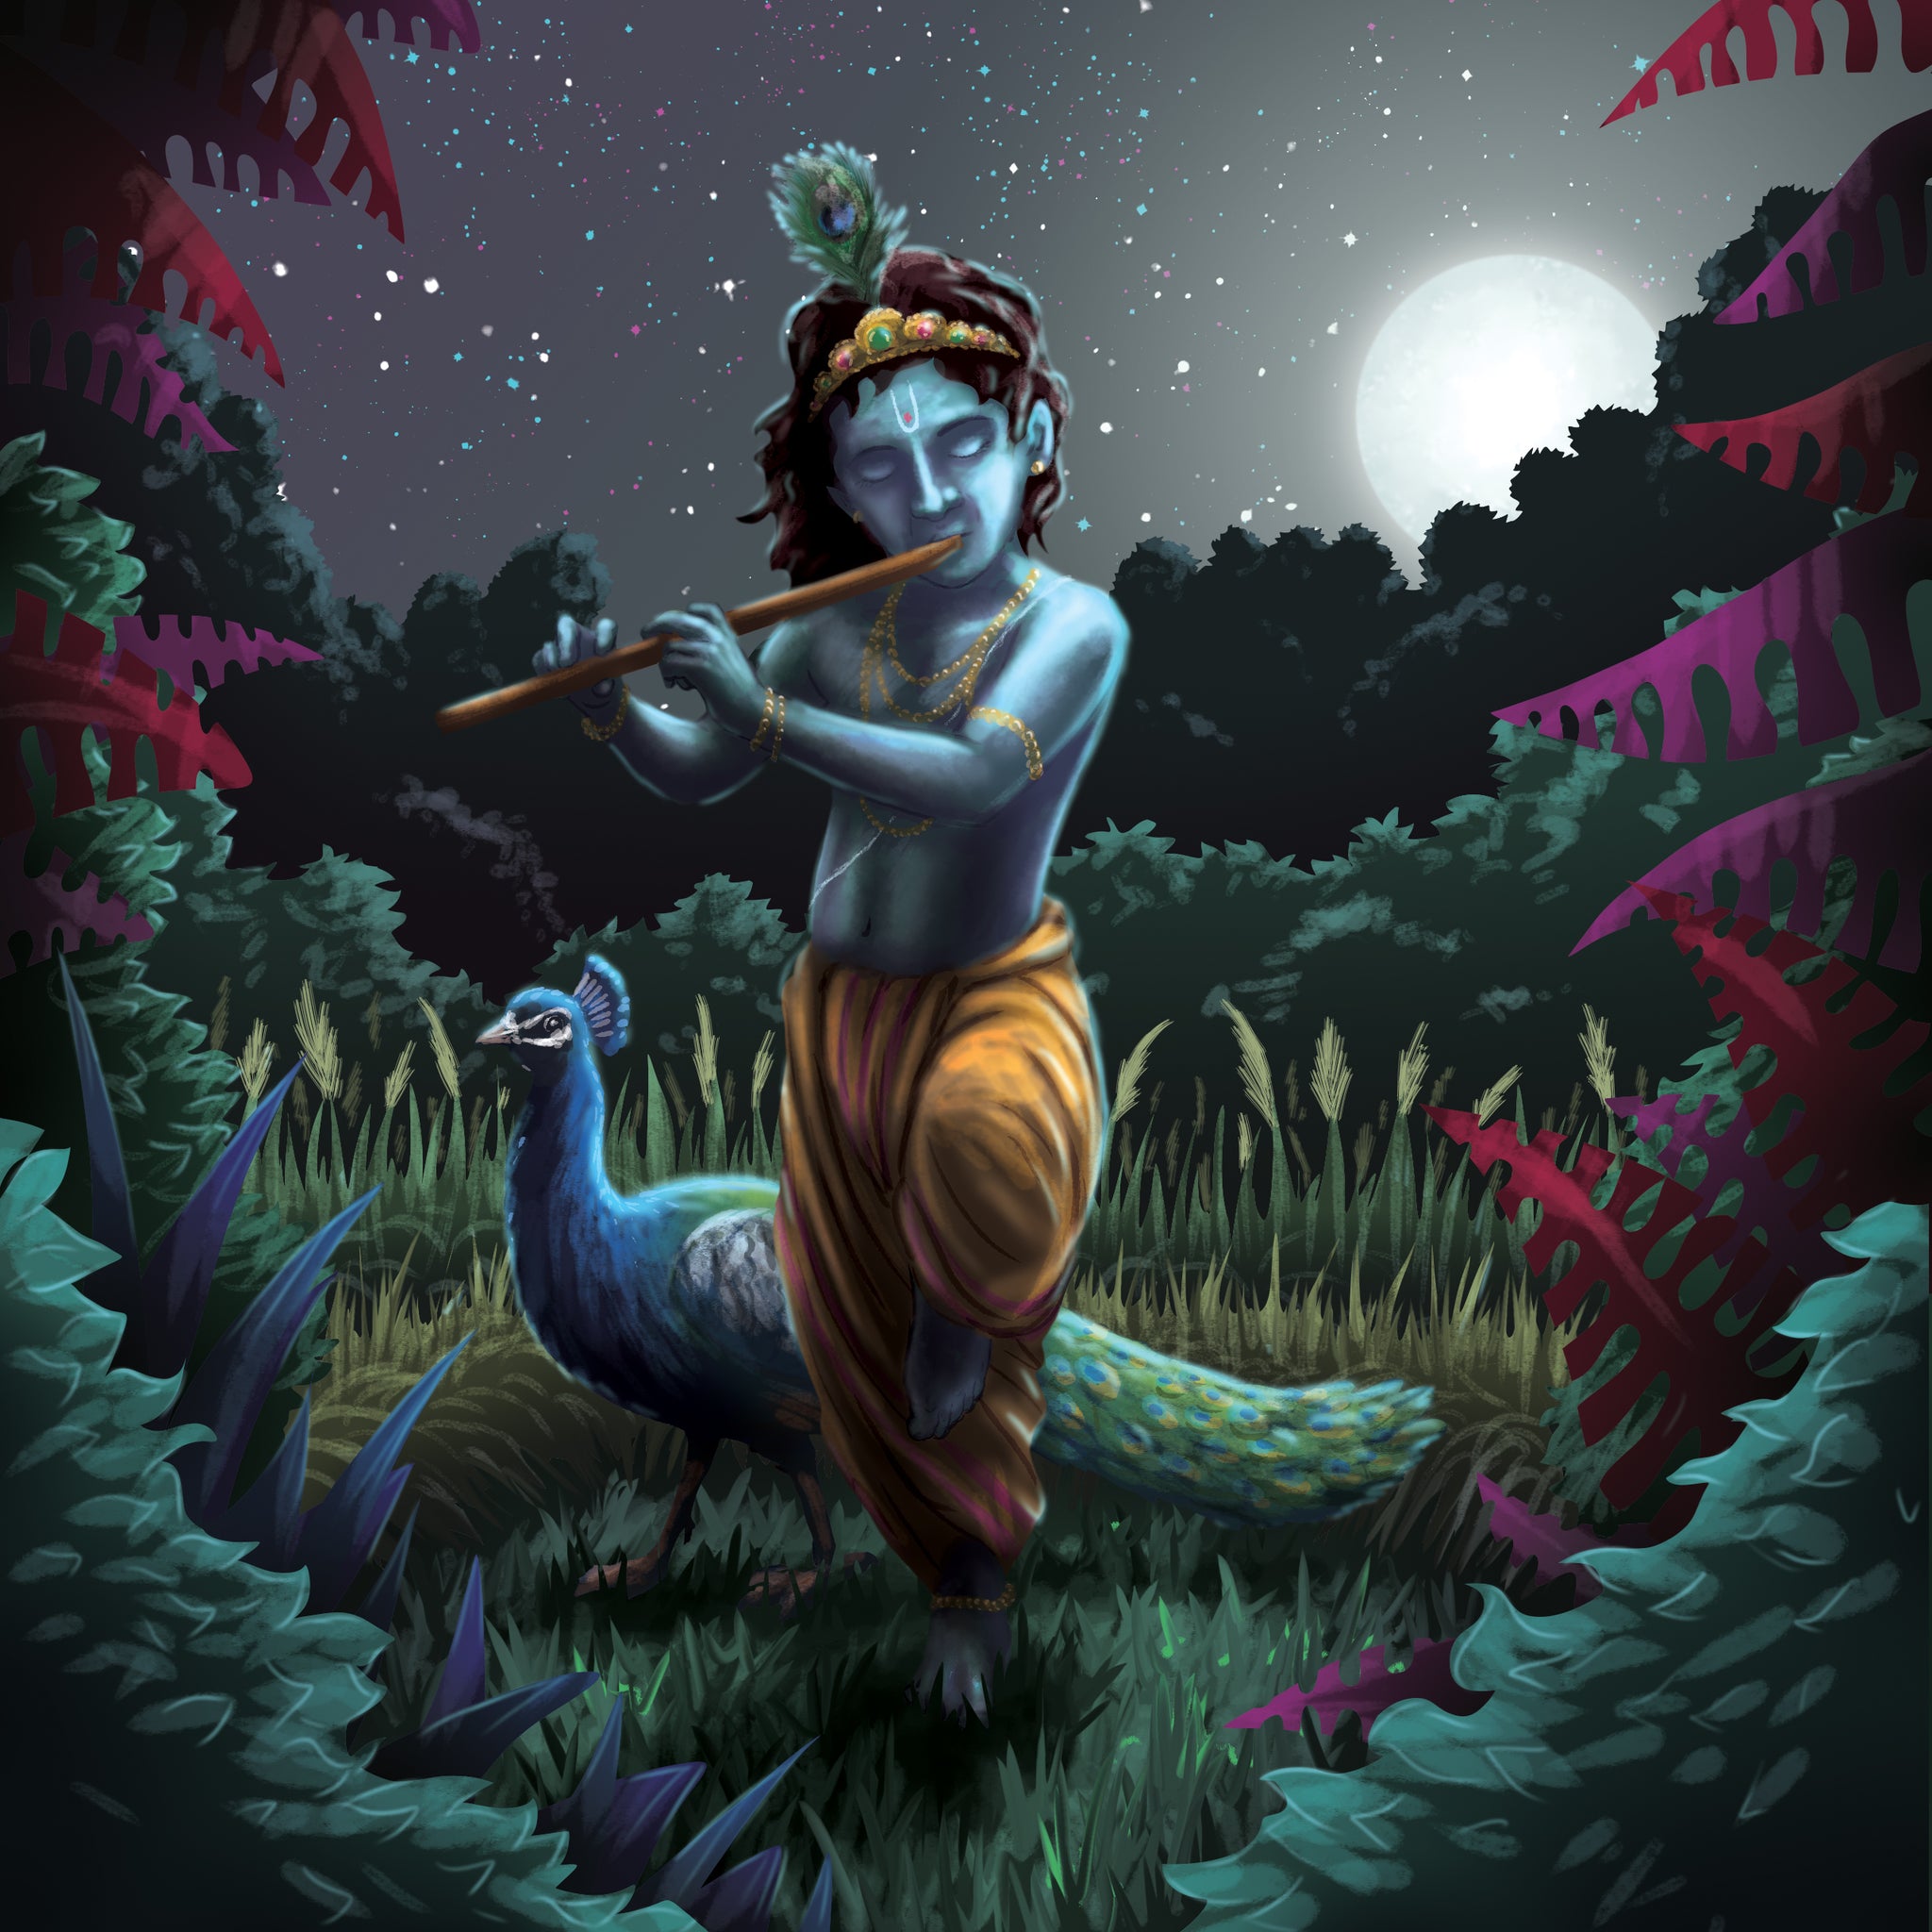 10 hóa thân của Vishnu được thể hiện tuyệt đẹp qua từng bức ảnh và câu chuyện truyền cảm hứng tại The Jai Jais. Hãy cùng tìm hiểu về những hóa thân này, để khám phá sức mạnh và thông điệp rõ ràng mà nhân vật này mang lại, và truyền cảm hứng cho sự phát triển của bản thân.